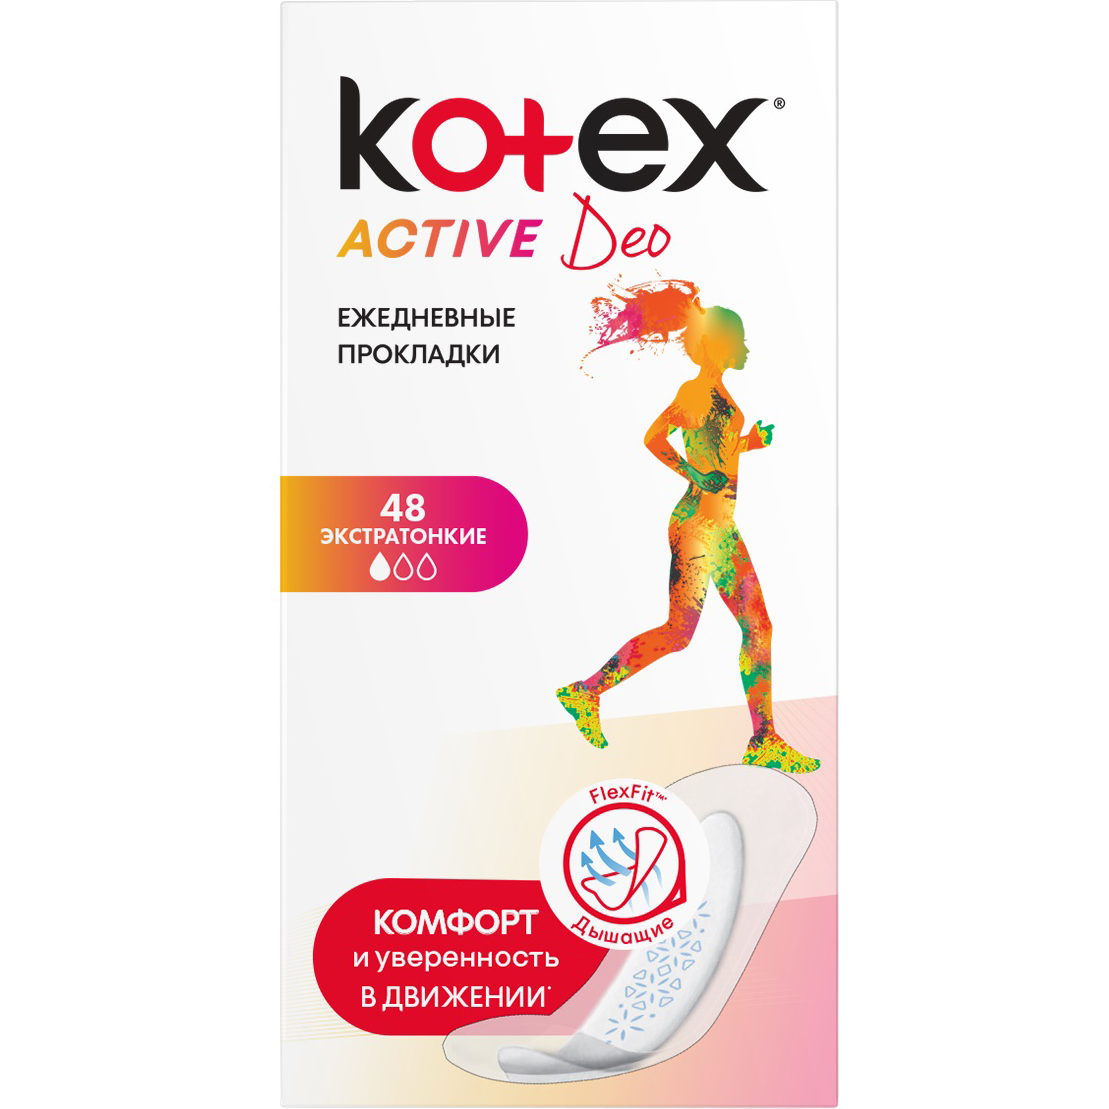 Прокладки Kotex Active Deo Экстратонкие 48 шт прокладки kotex normal deo 56 шт